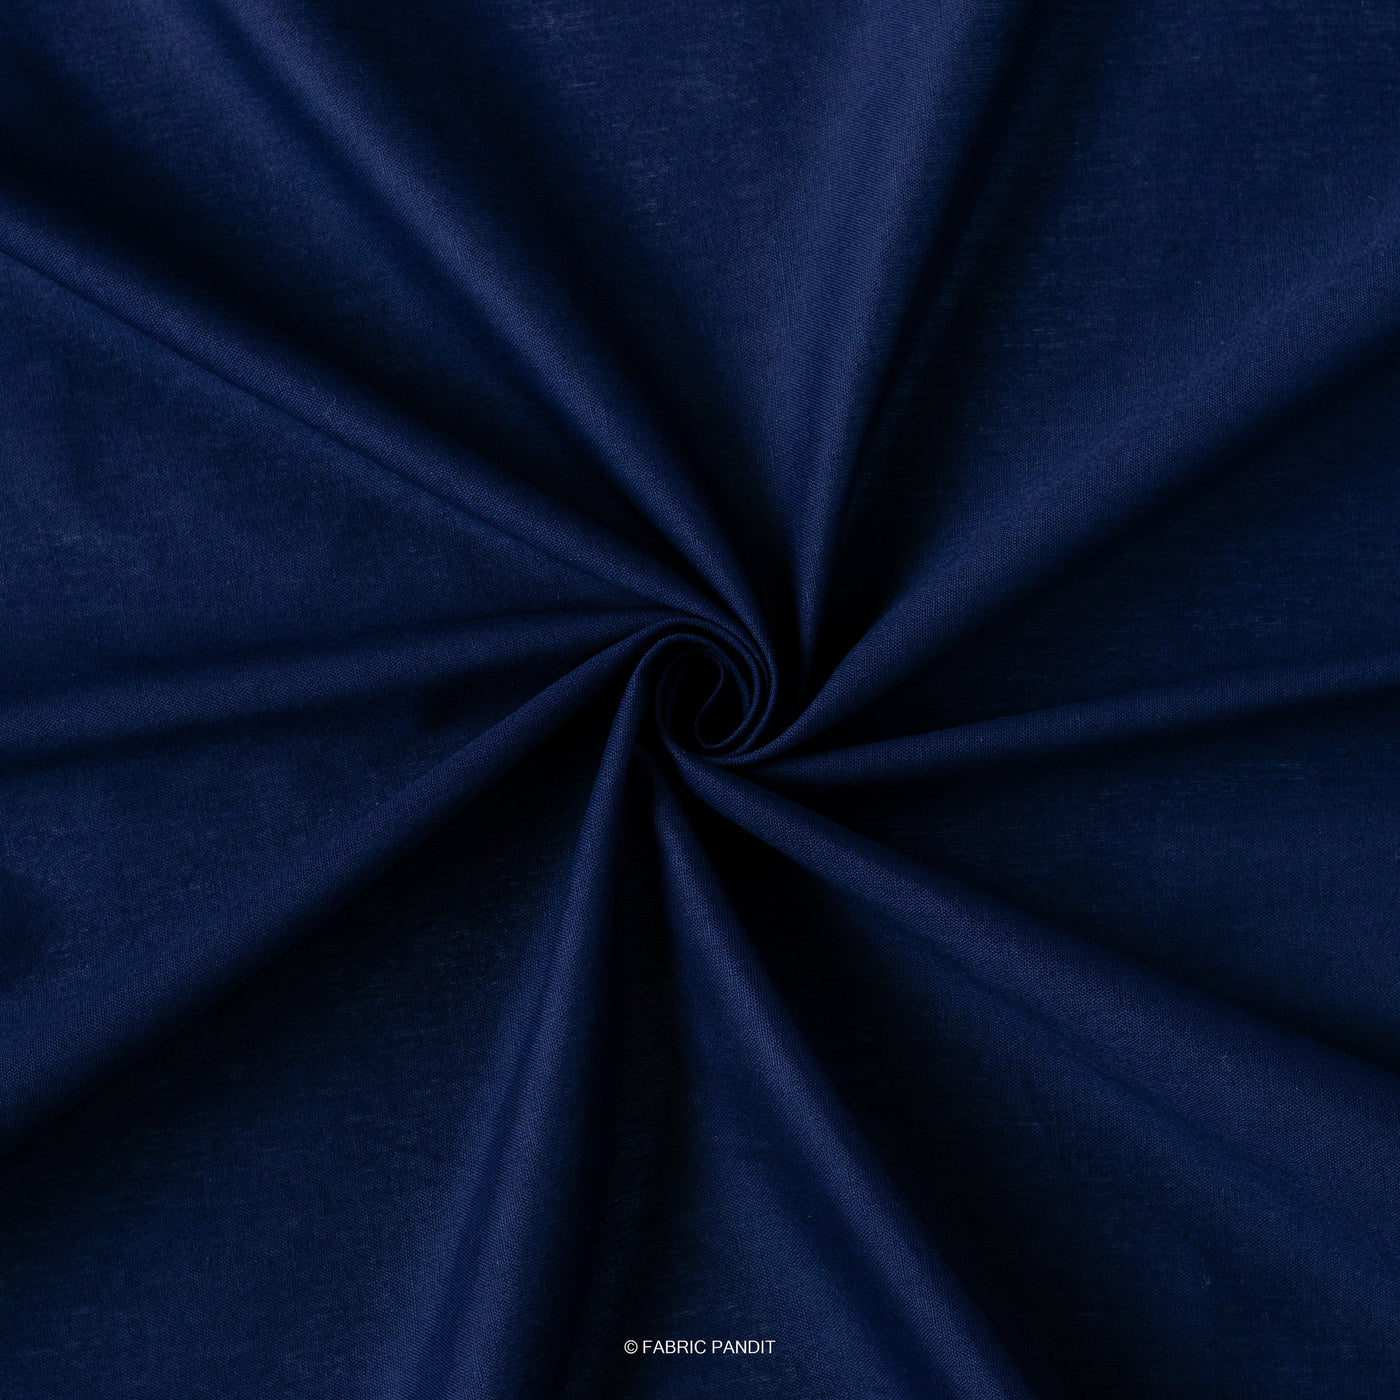 Fabric Pandit Cut Piece (CUT PIECE) Royal Blue Color Pure Cotton Linen Fabric (Width 42 Inches)